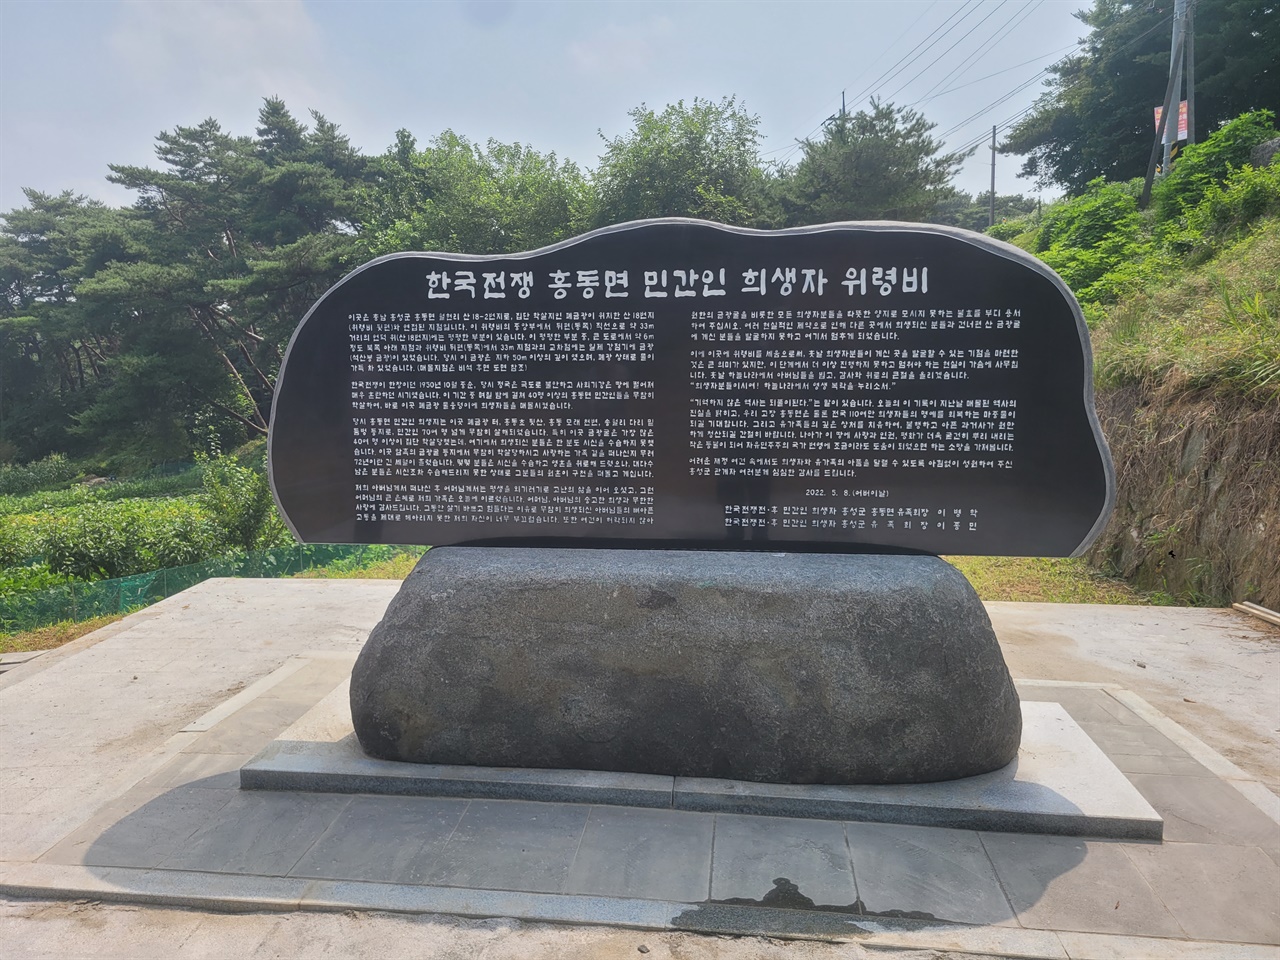 홍성군 홍동면에 한국전쟁 전후 희생된 민간인을 추모하는 위령비가 건립됐다.